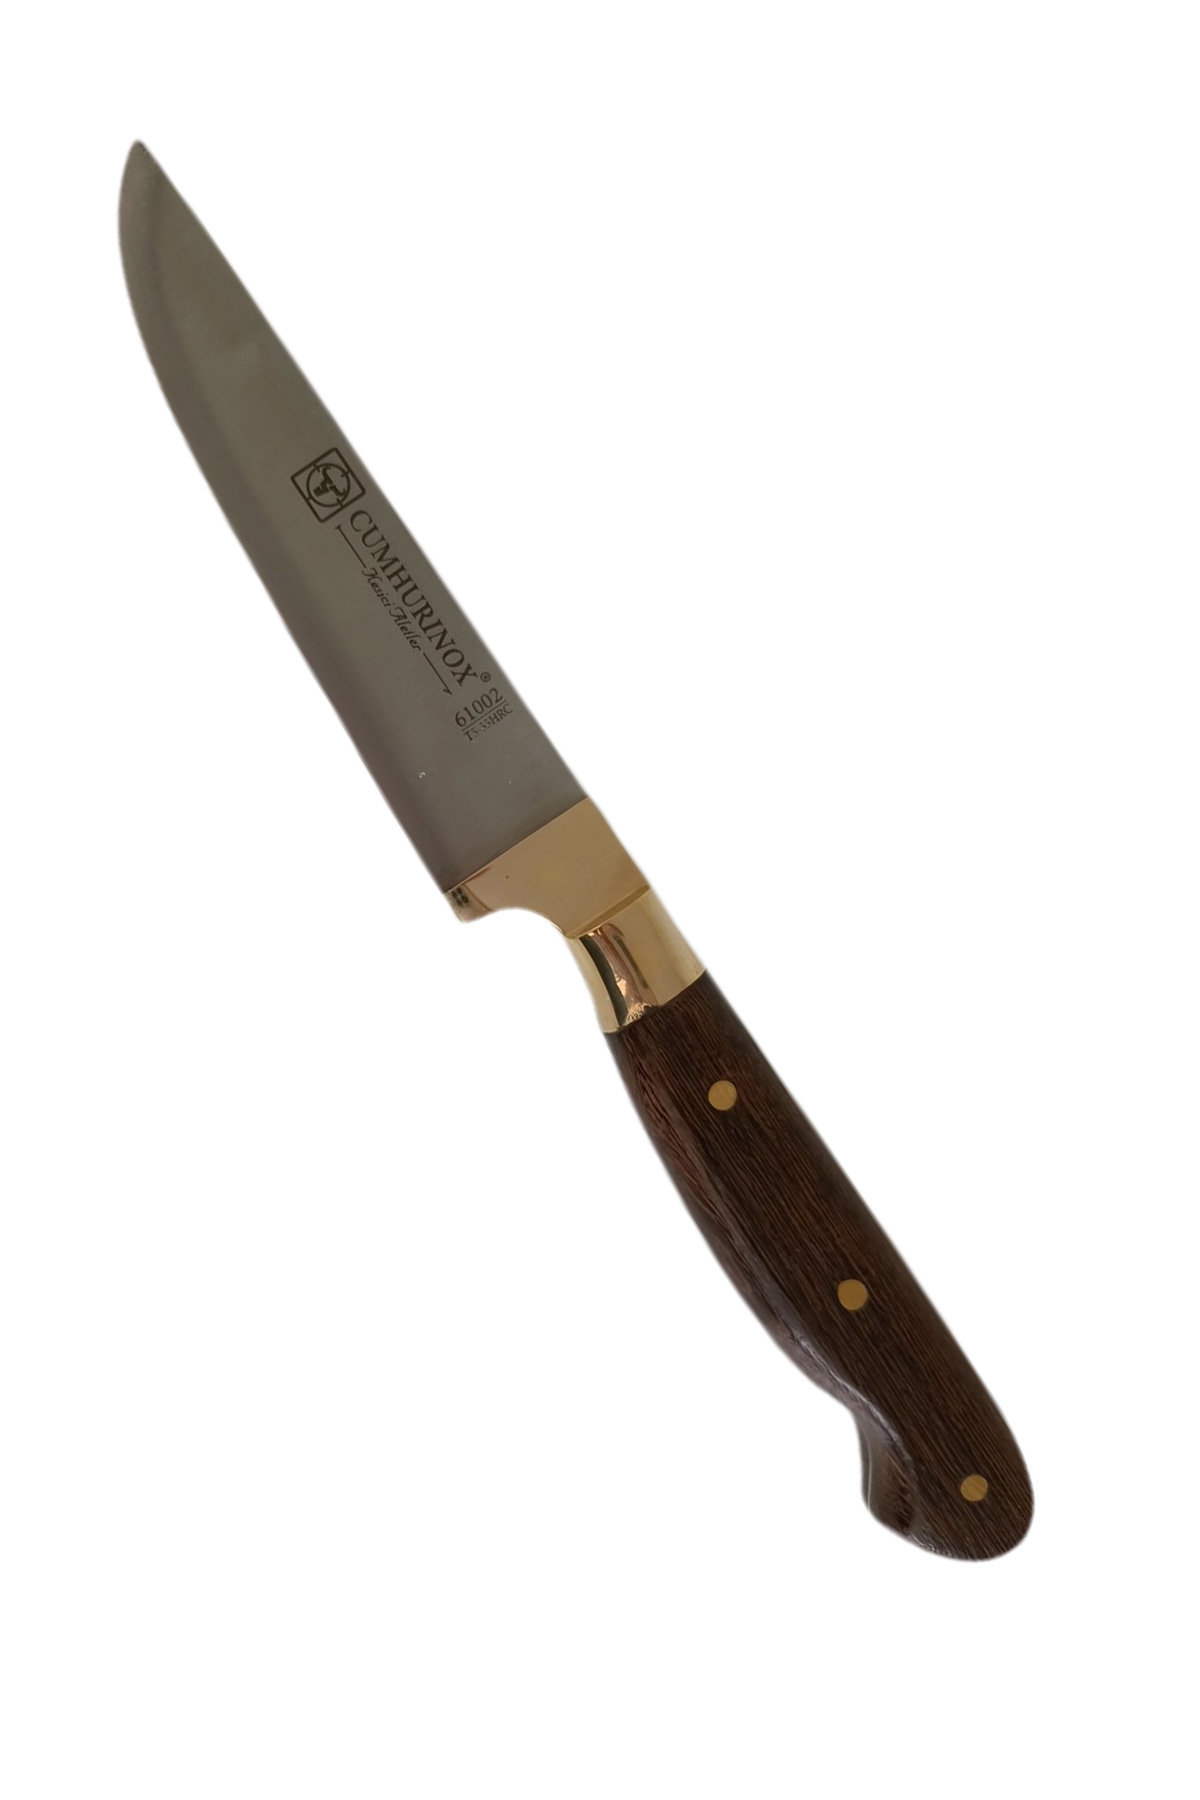 Orjinal Sürmene Mutfak Bıçağı 4 lü Takım - Et Ekmek Sebze Meyve Bıçağı %100 El İşçiliği